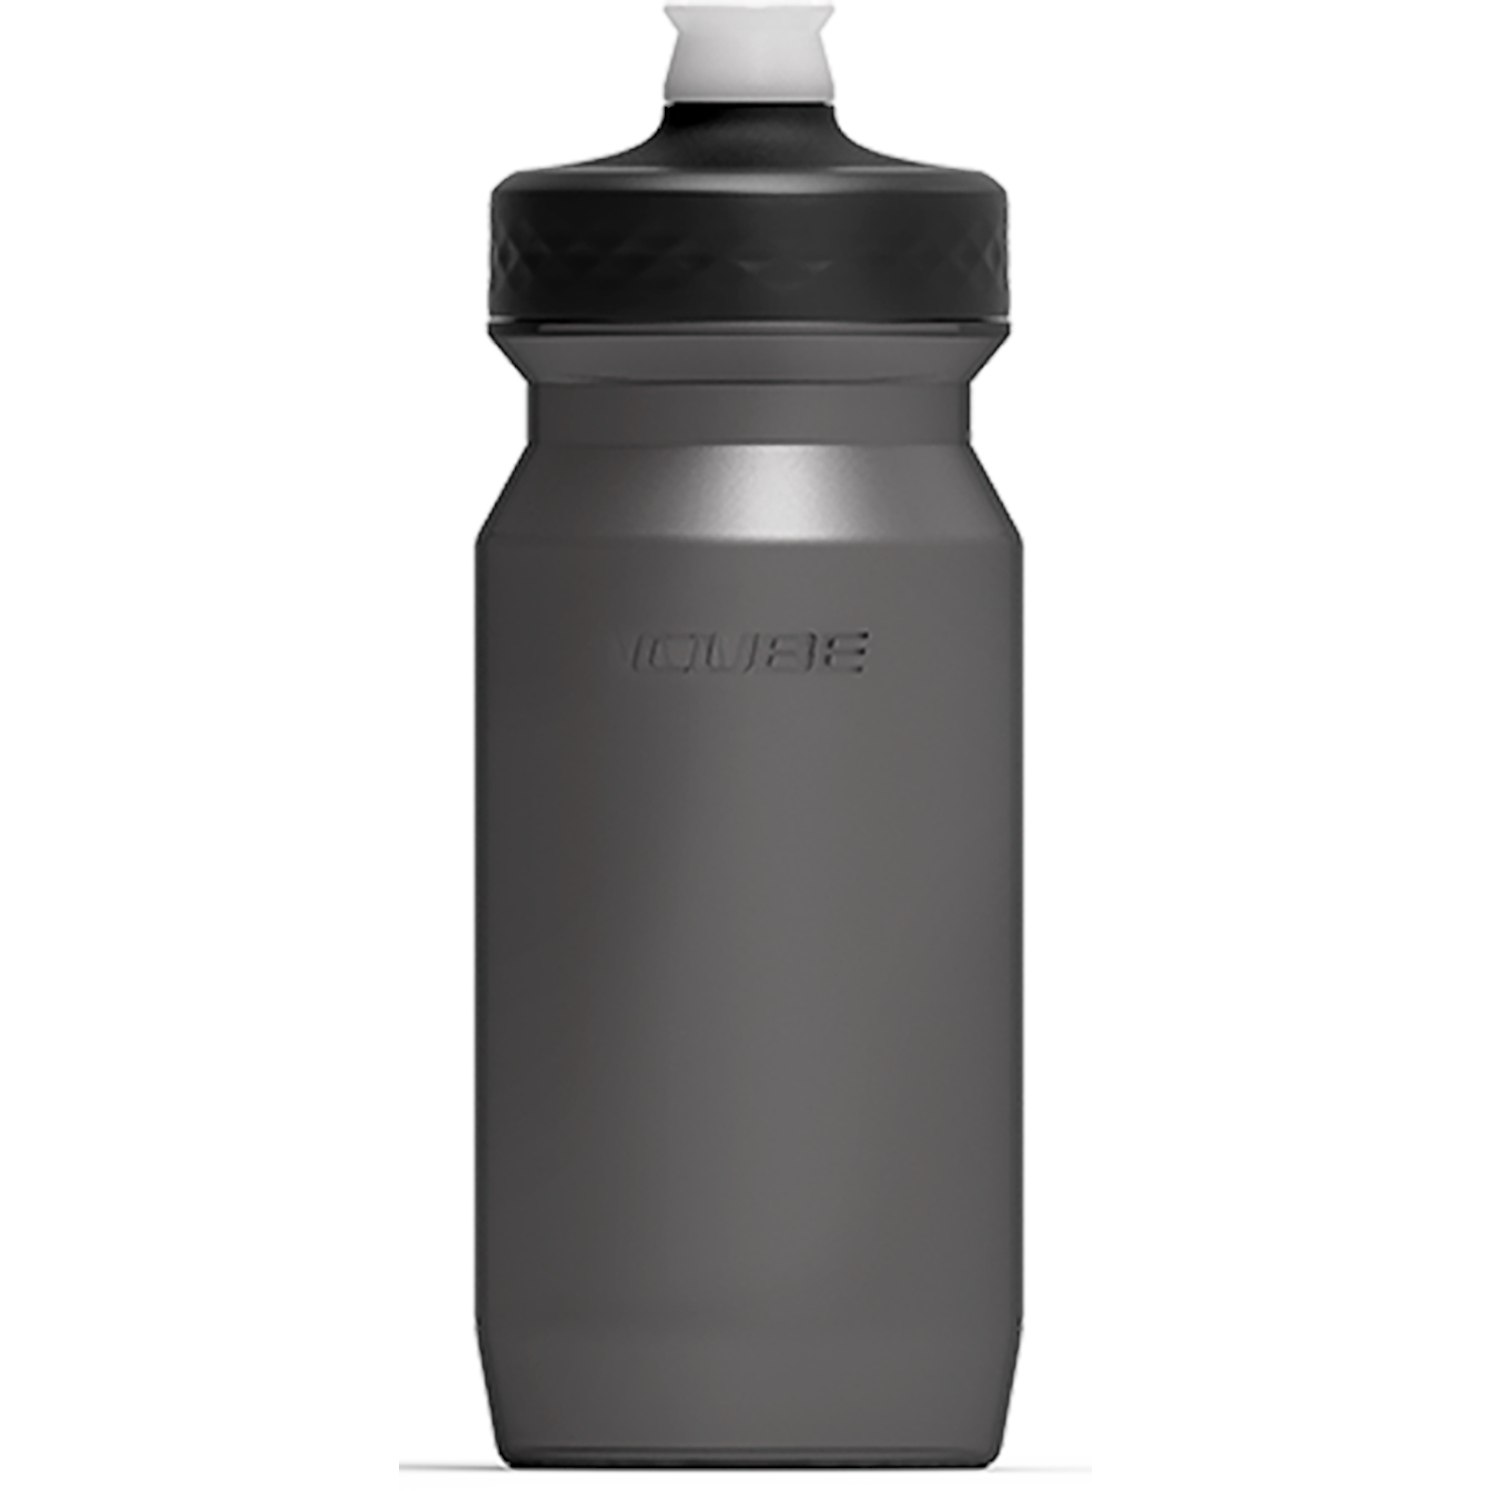 Produktbild von CUBE Trinkflasche Grip 0.5l - schwarz